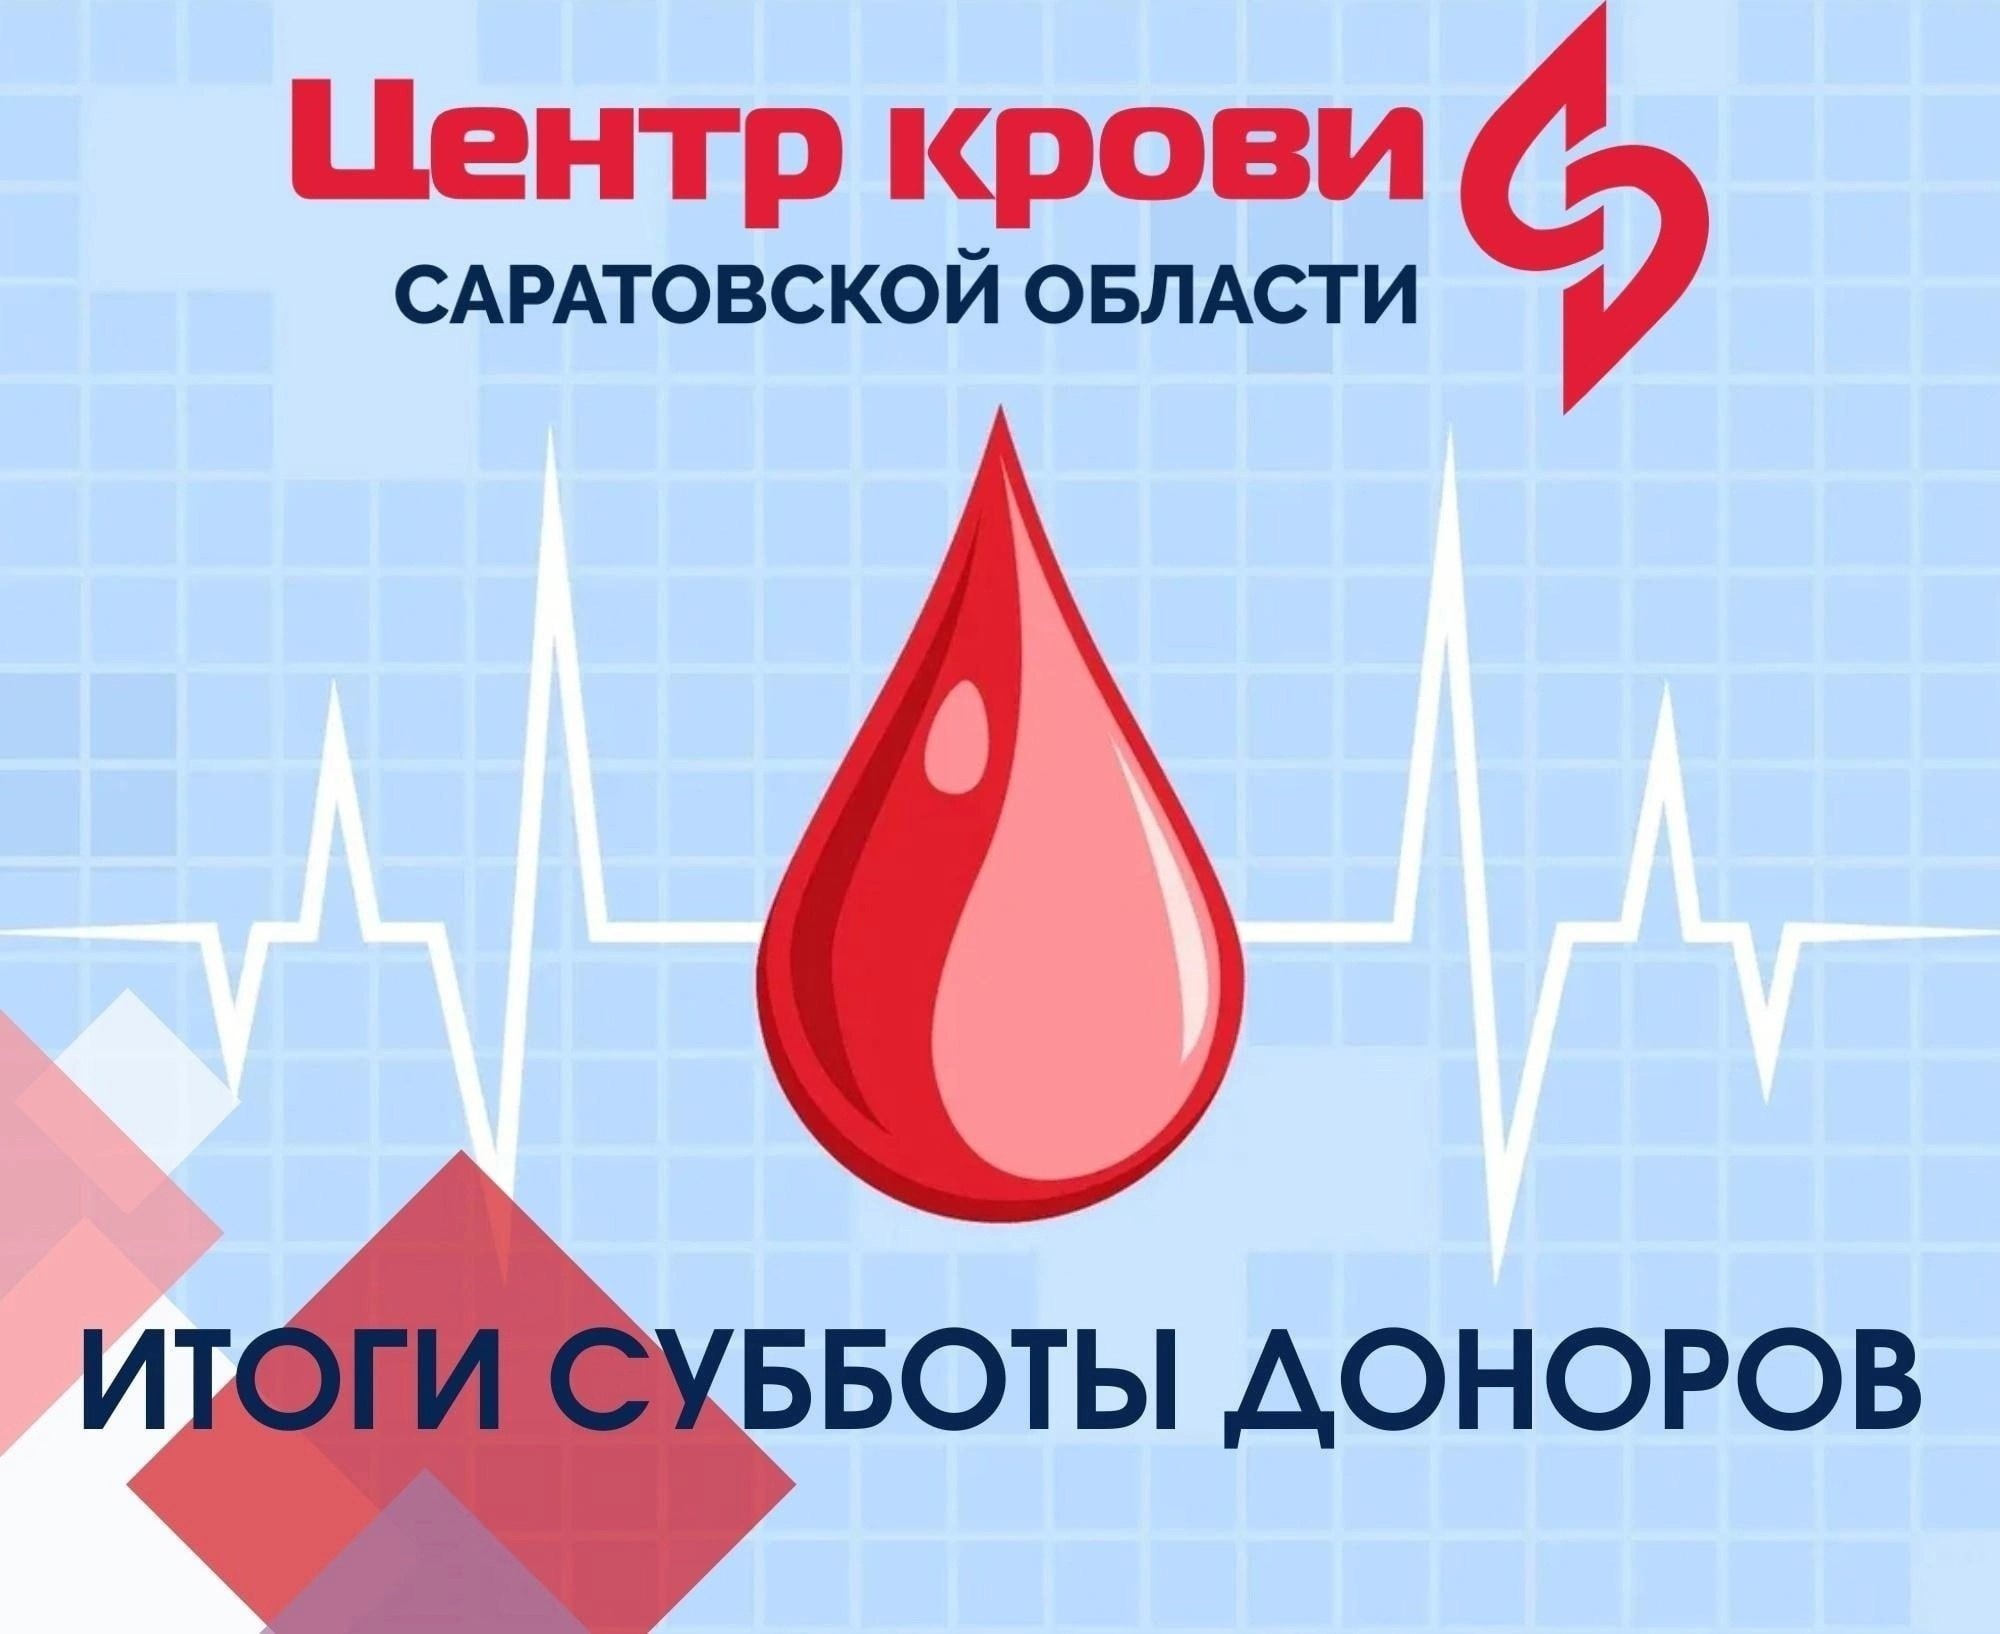 Проект донор. Донорство крови. Донорская суббота. Доноры крови ЕГЭ. Донорство крови интервал.